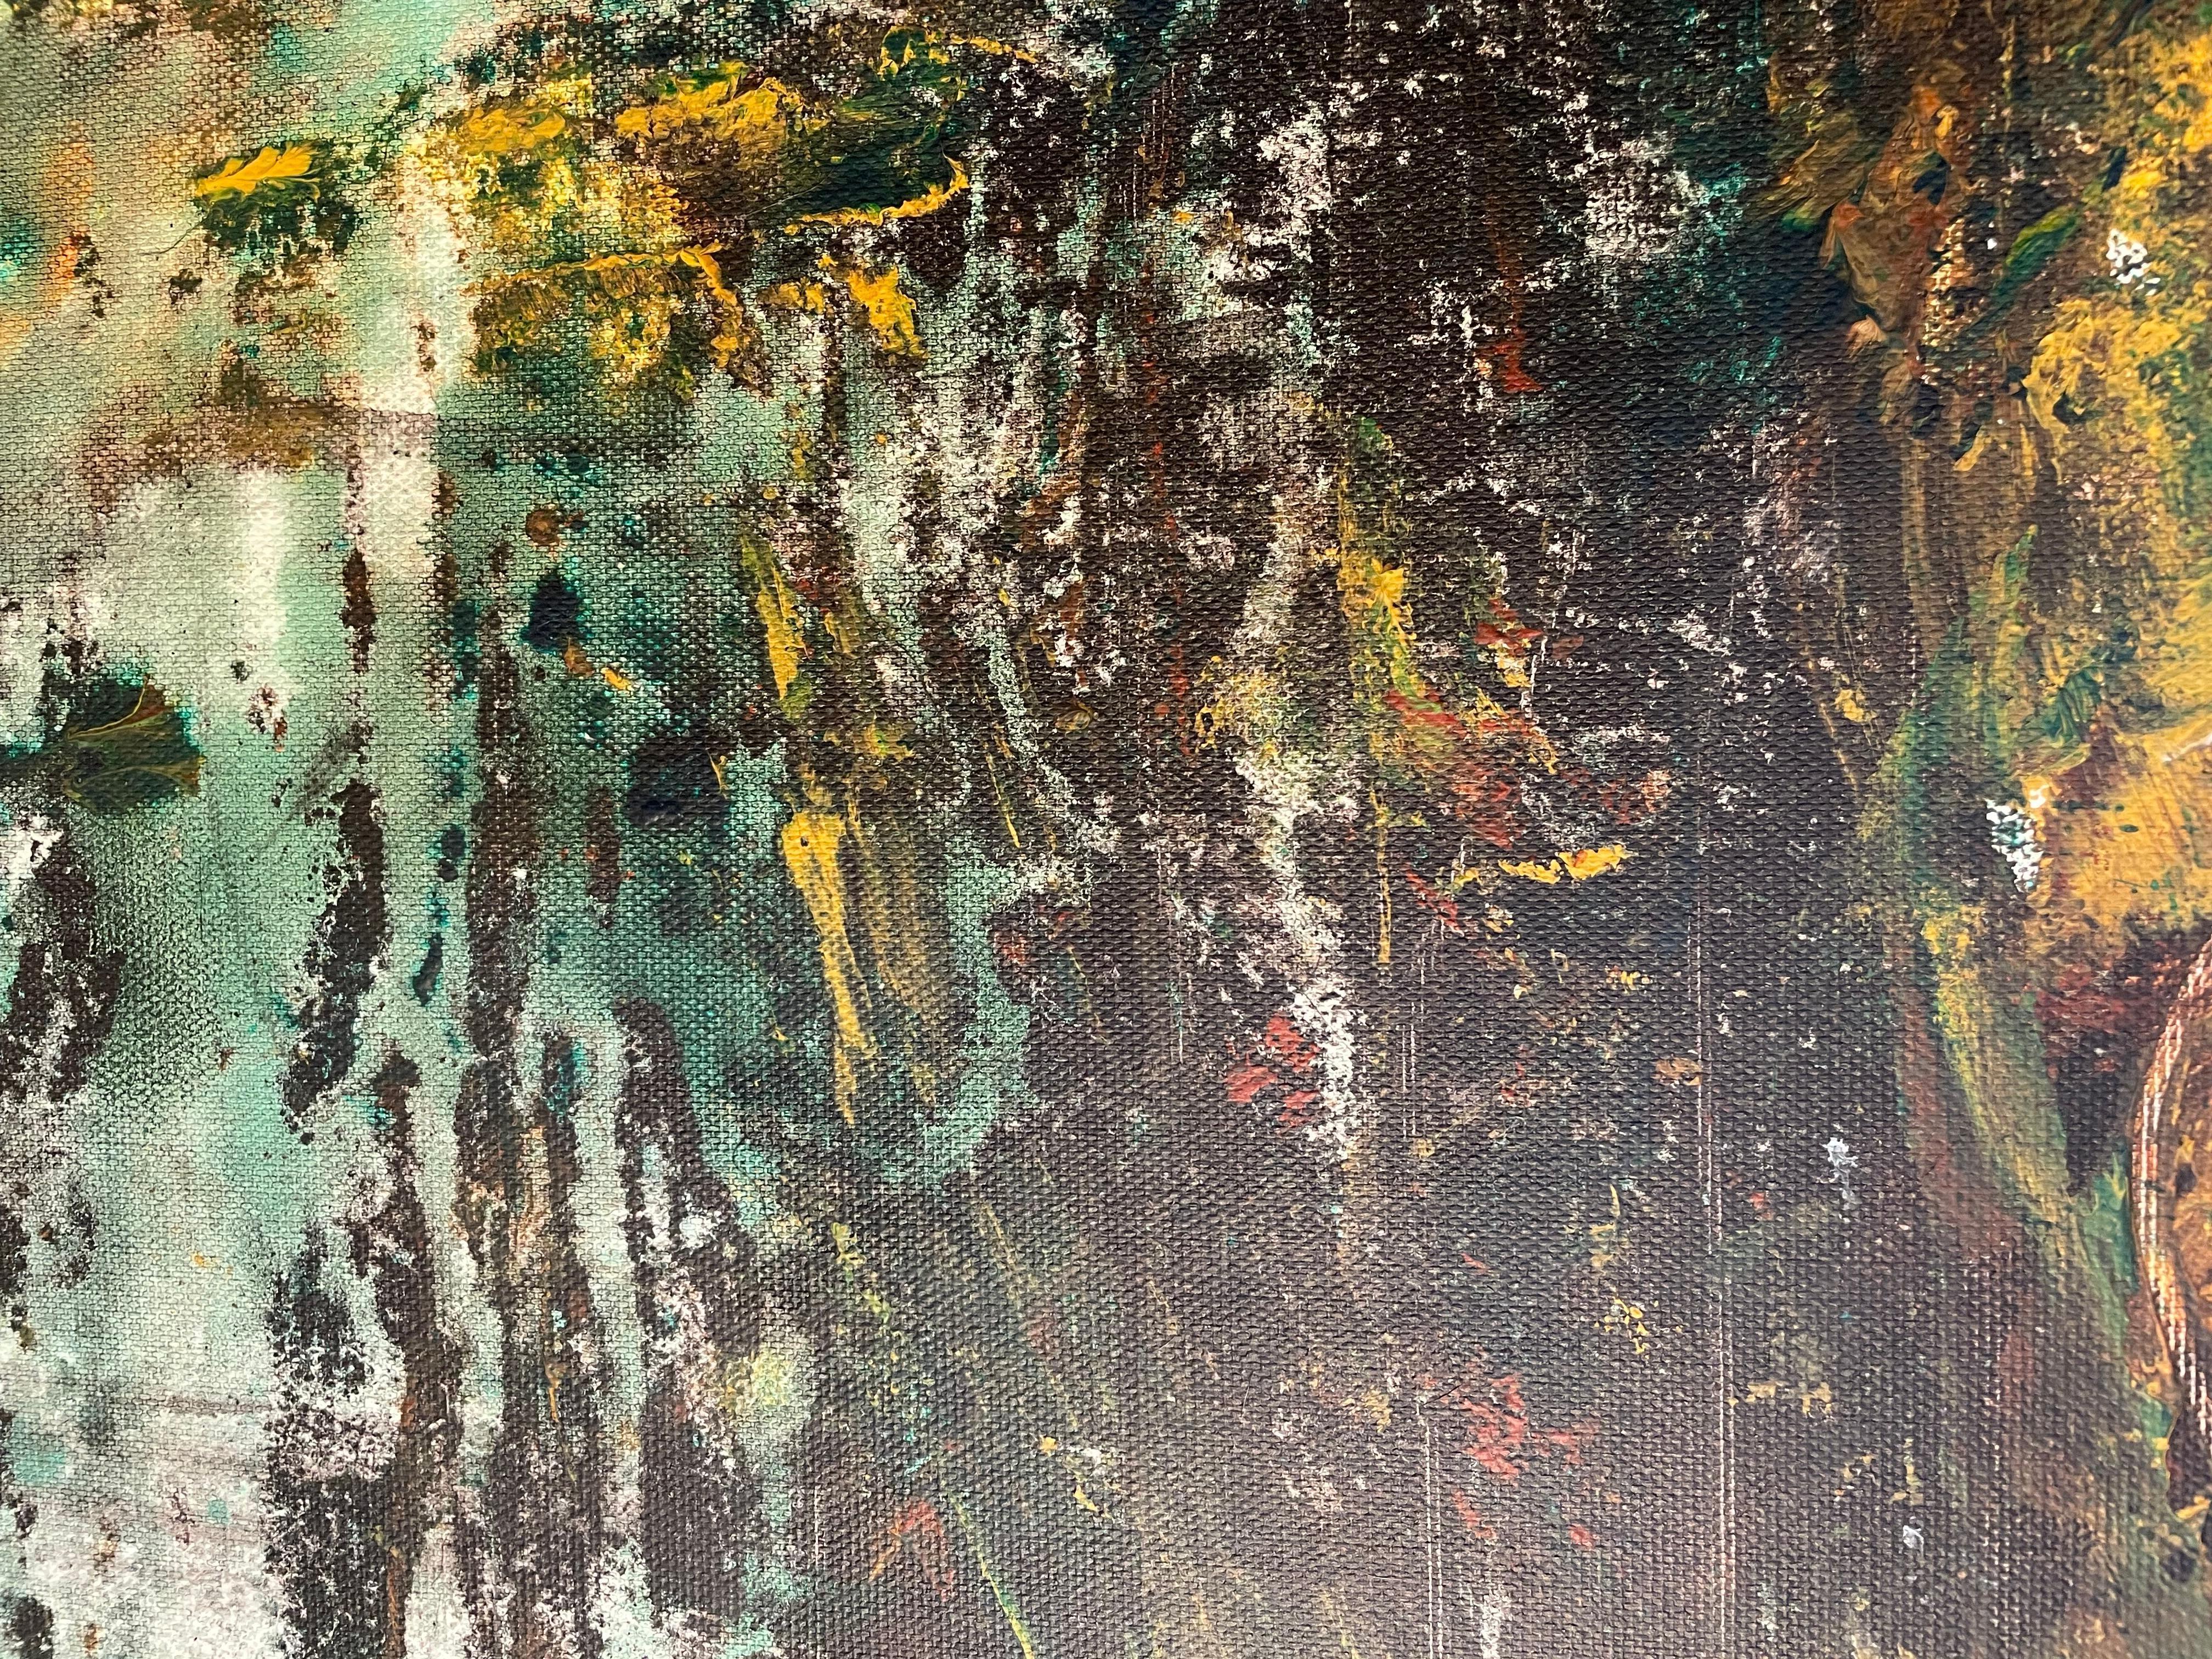 « Emerald Whispers », expressionniste abstraite technique mixte du 21e siècle par Nan  - Expressionnisme abstrait Painting par Nan Van Ryzin